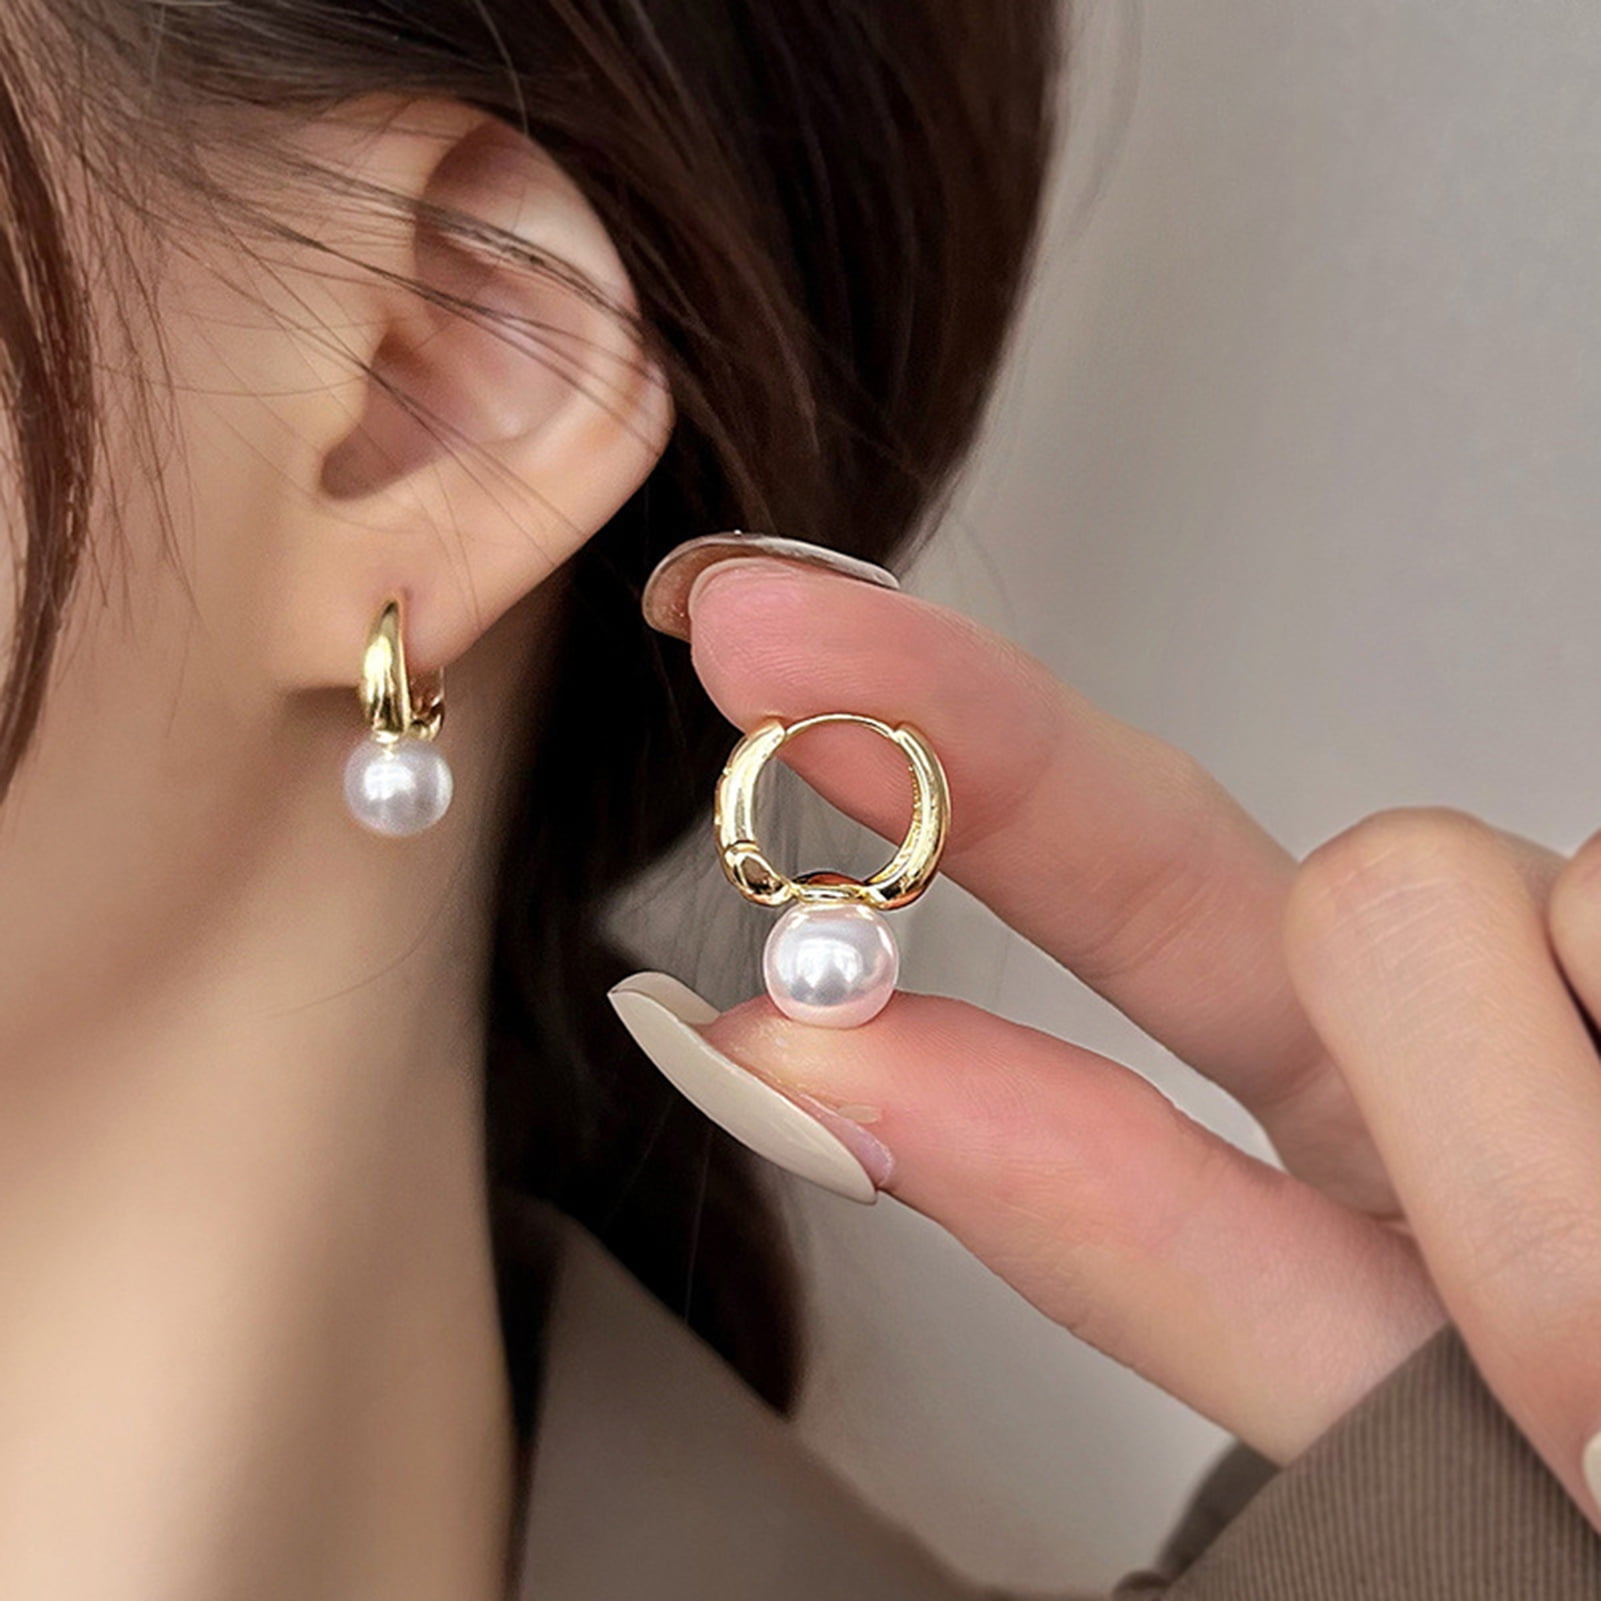 Sterling Silver Hammered Hoop Chain Earrings with Small Gemstones 3 Hoop Drop